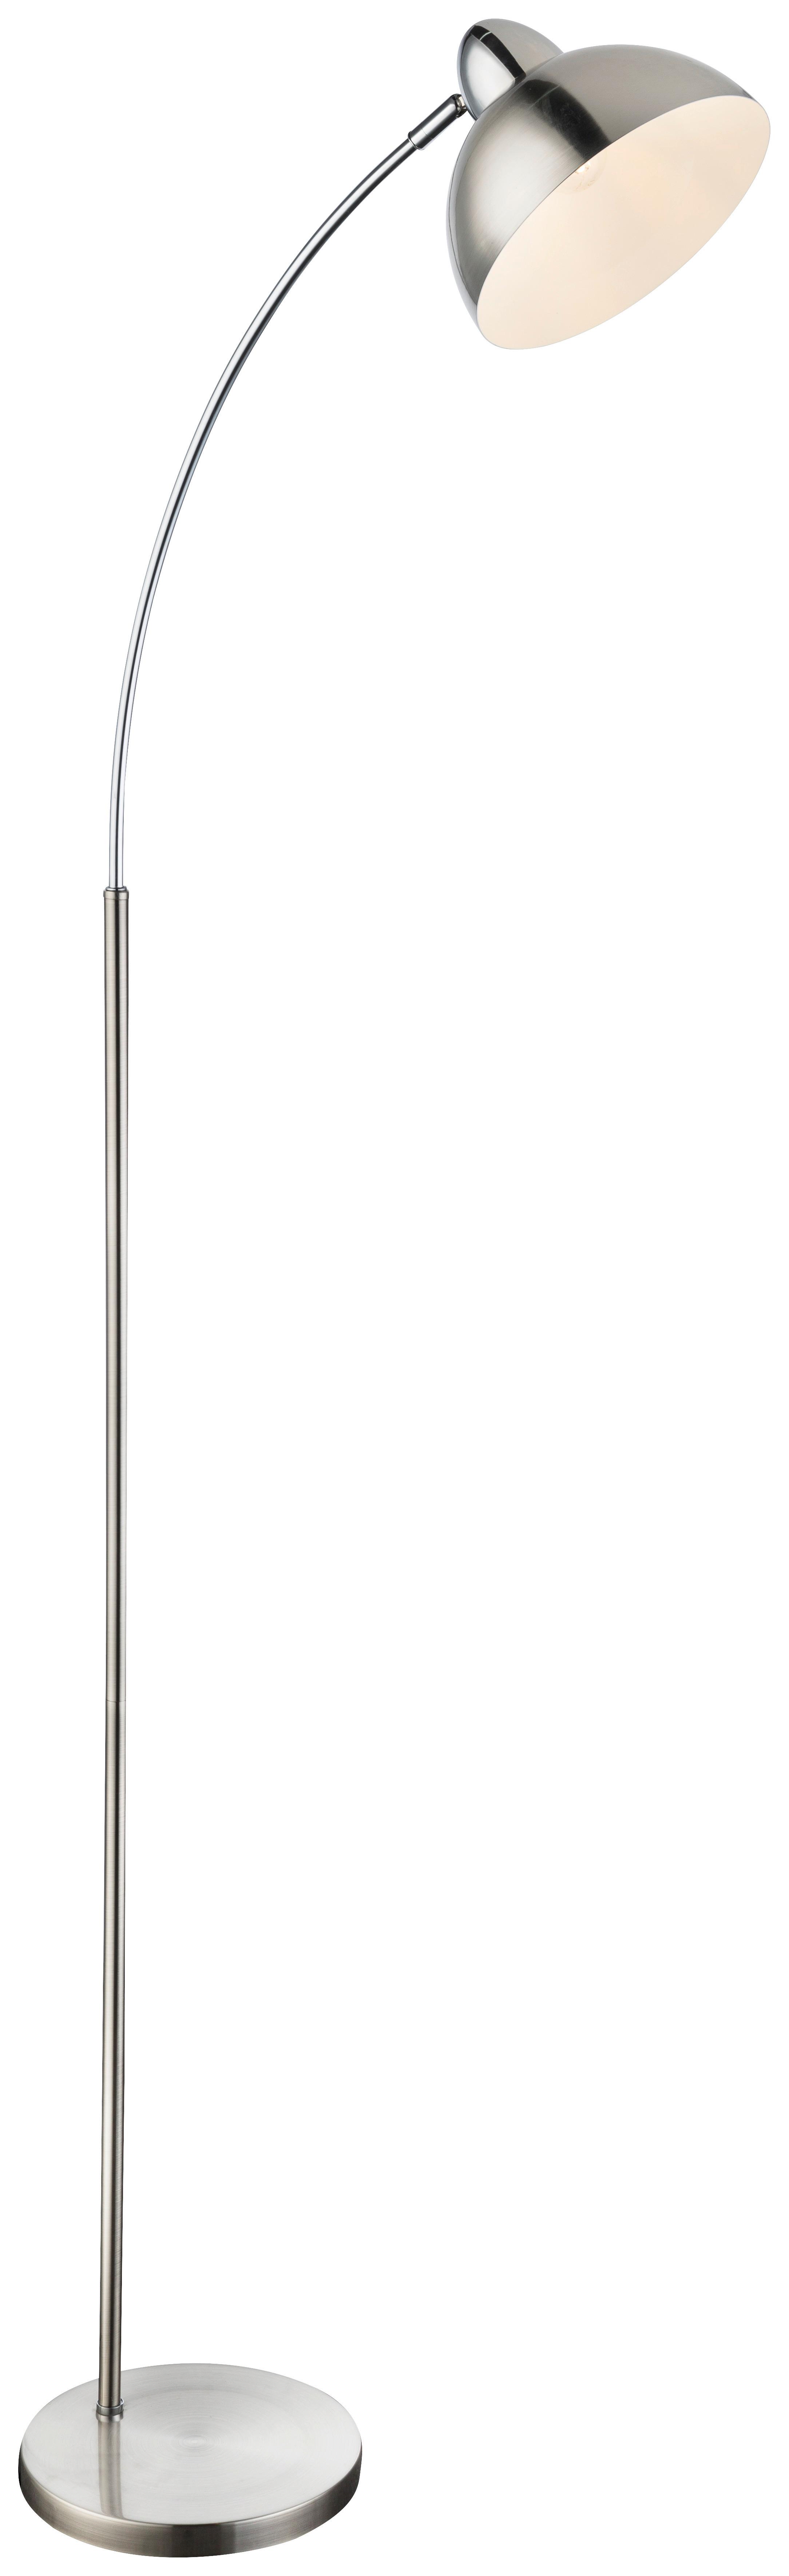 Stehleuchte Leana max. 40 Watt - Weiß/Nickelfarben, MODERN, Metall (50/23/155cm)